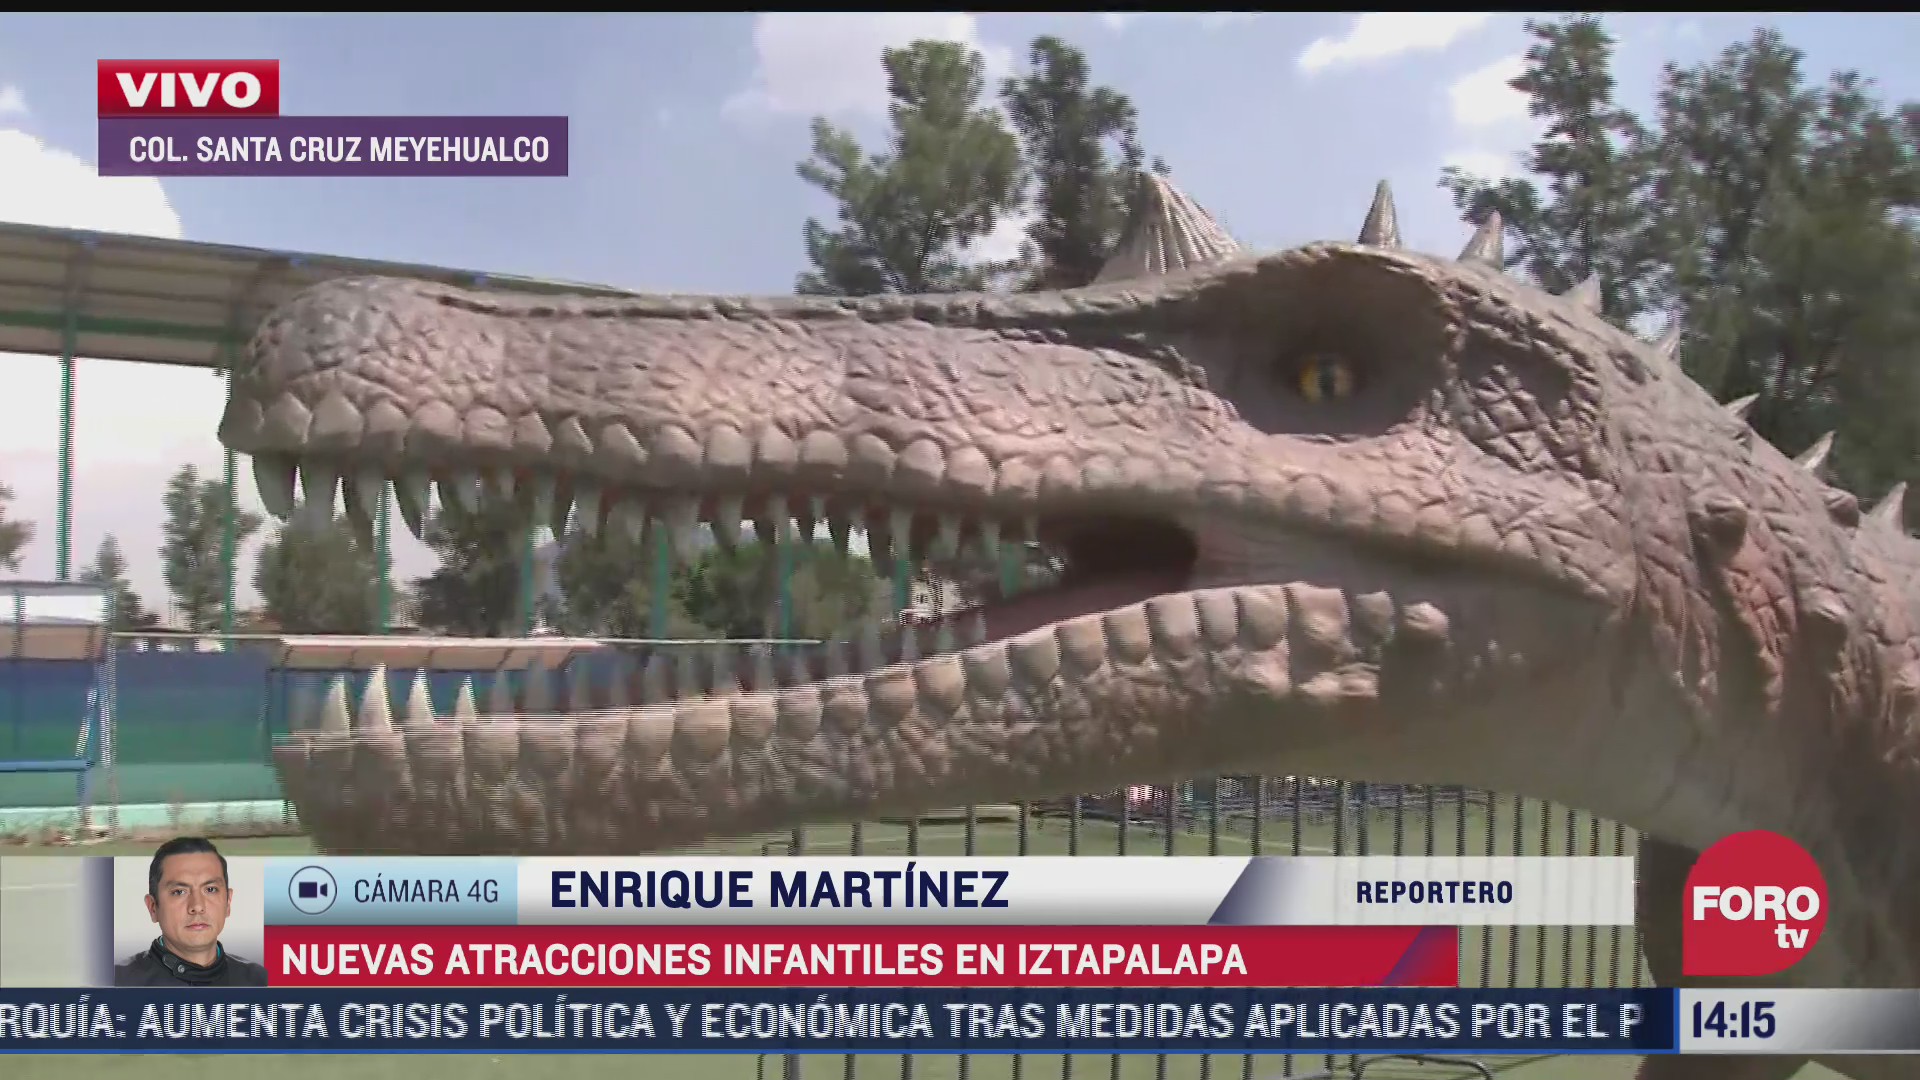 dinosaurios son las nuevas atracciones en el parque santa cruz meyehualco